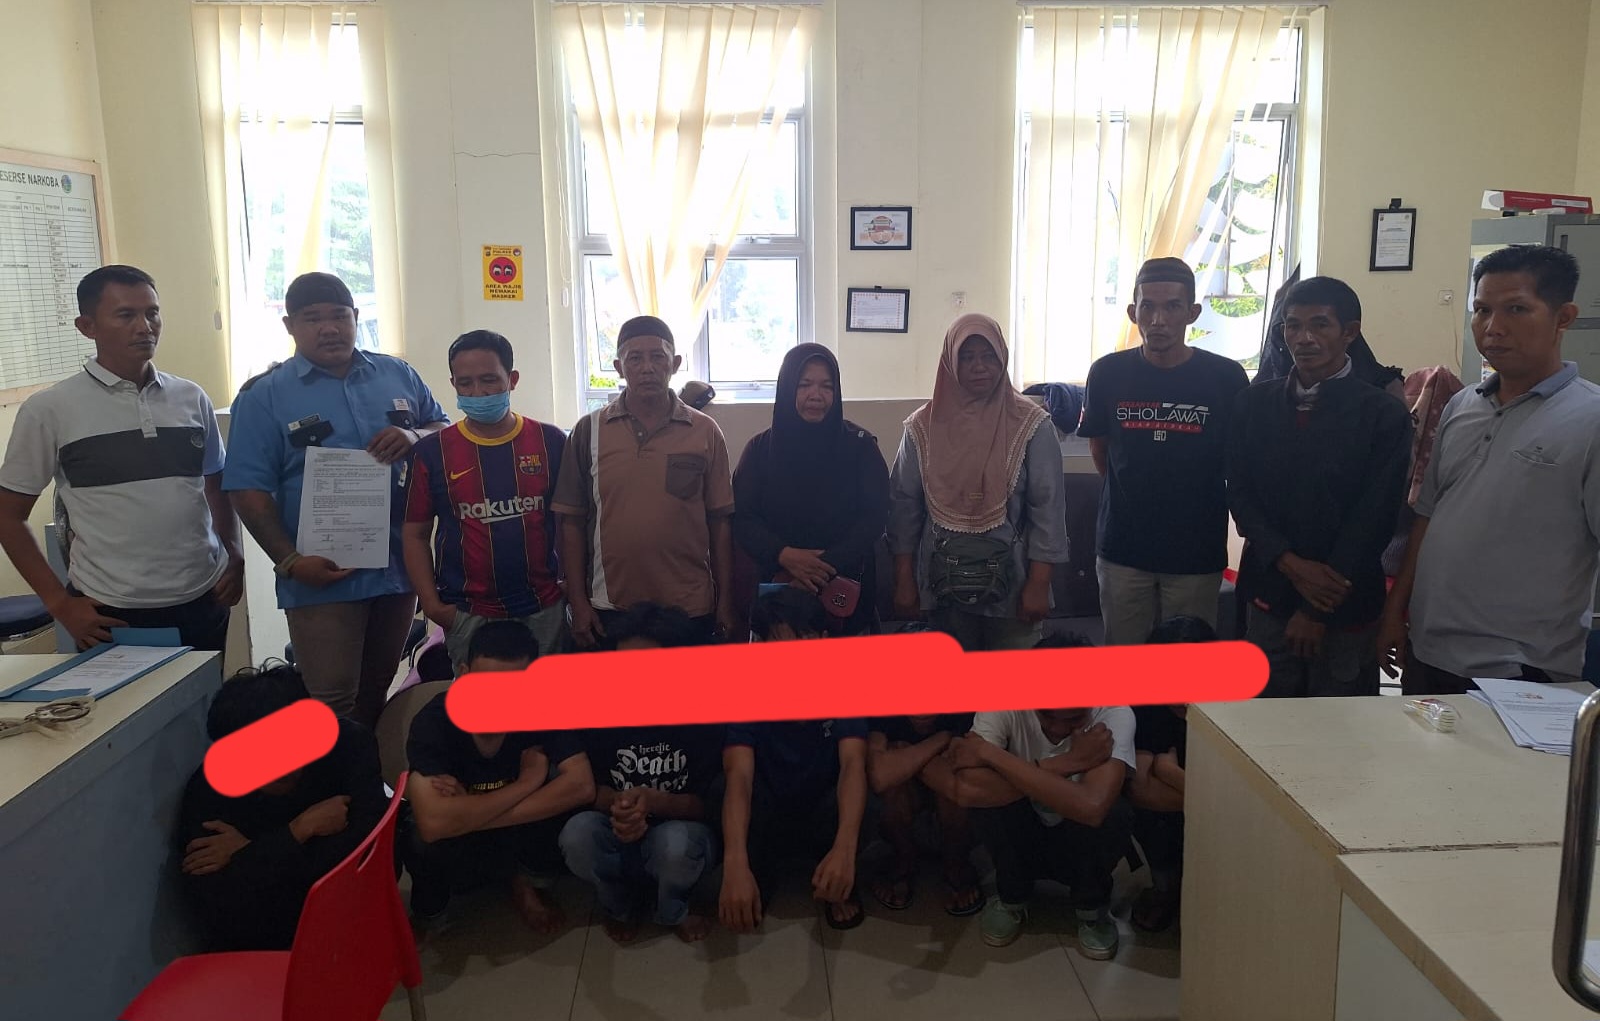 7 Pemuda Terjaring Saat Pesta Tembakau Gorila di Depan Kantor Camat Taman Sari, 3 Masih Pelajar